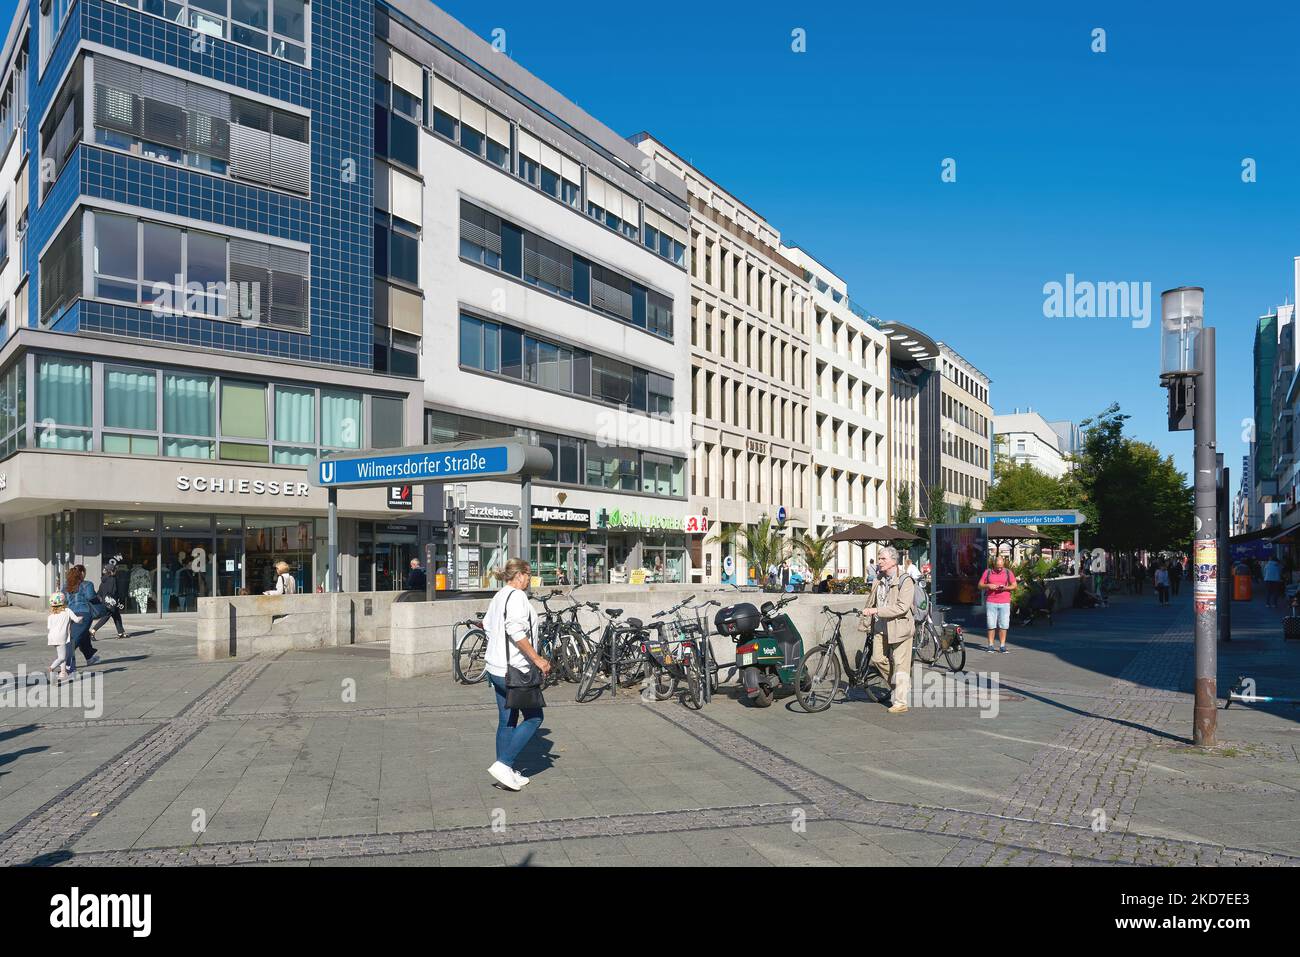 Scena di strada nella zona pedonale più antica di Berlino, Wilmersdorfer Strasse, una delle strade commerciali più popolari della città Foto Stock